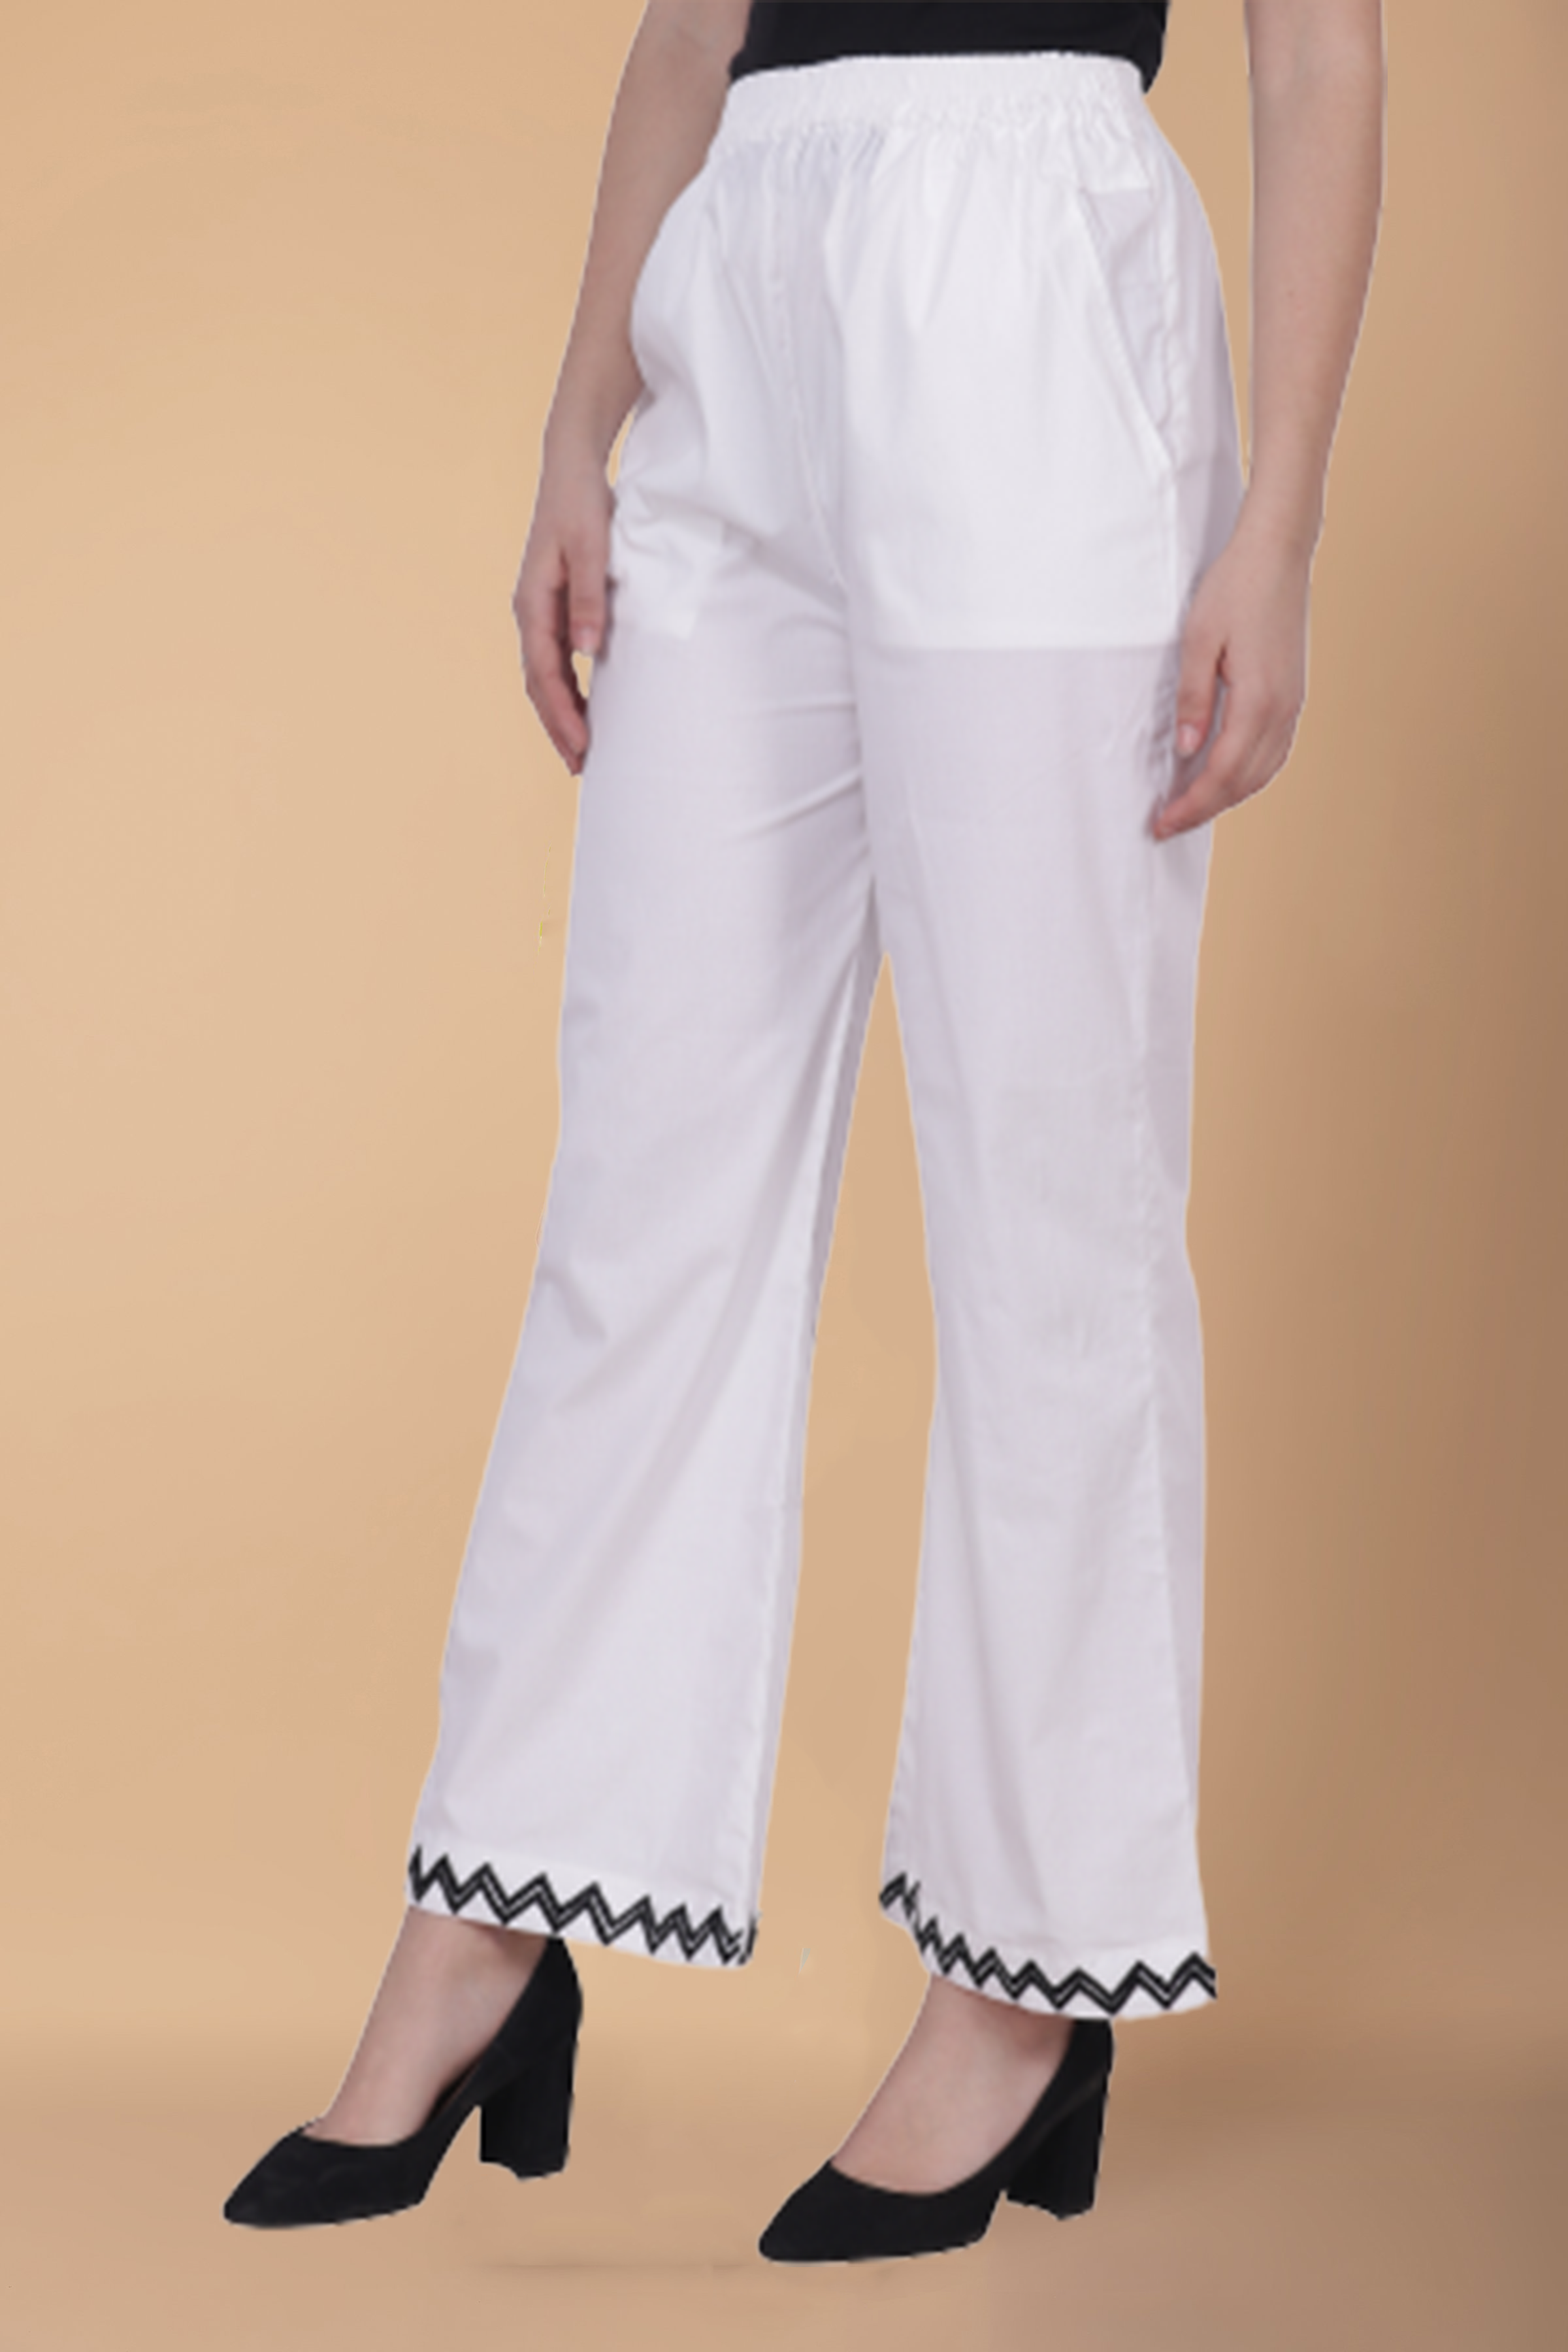 OUTFIT: white palazzo pants - Bikinis & Passports | White palazzo pants,  White lace top sleeveless, Summery outfits